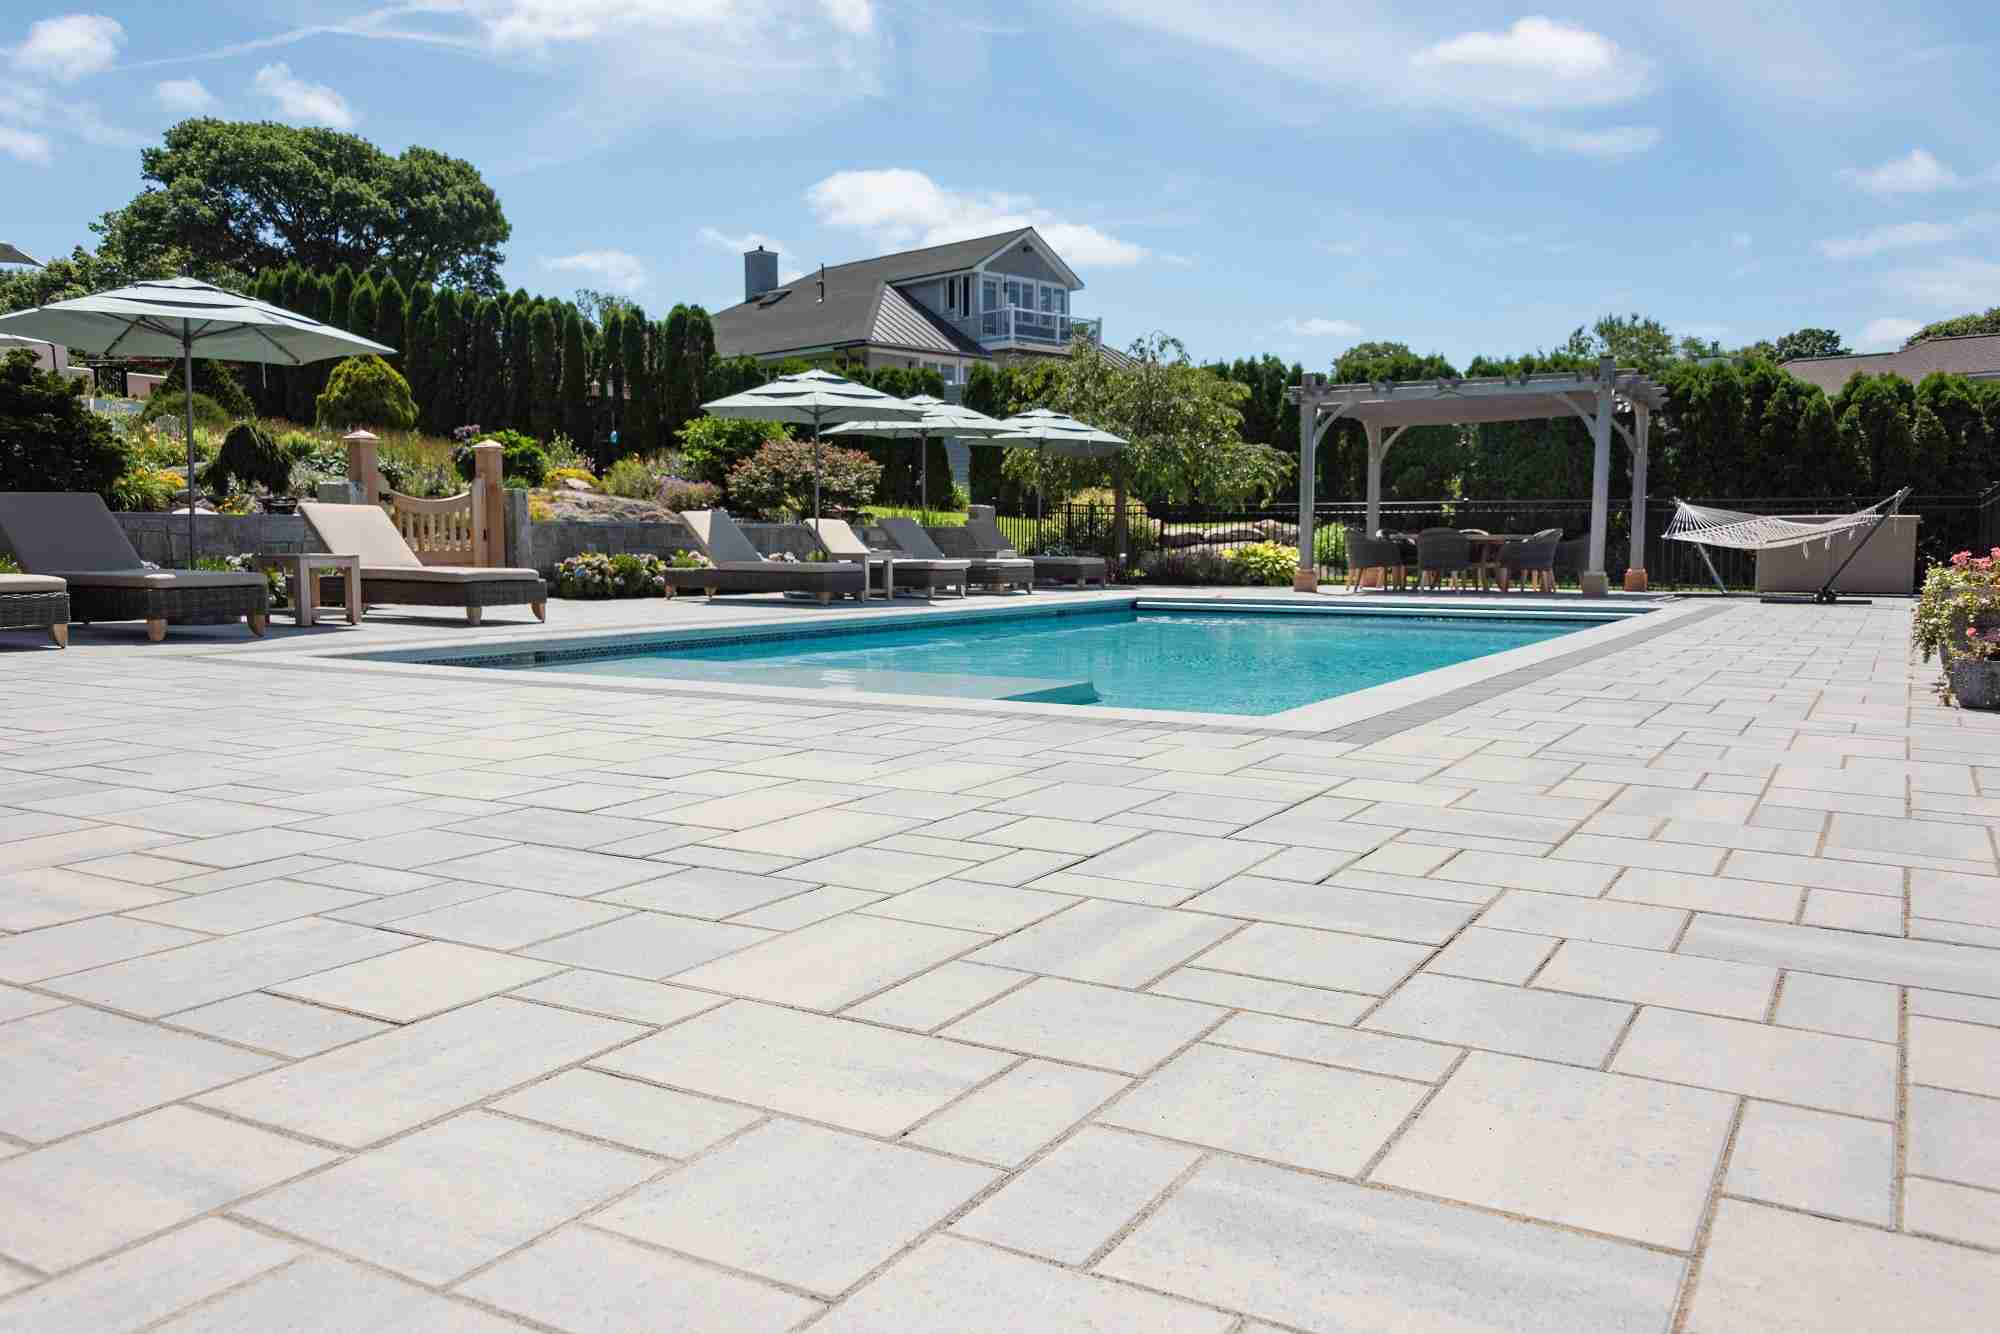 inground pool with stone patio pavers